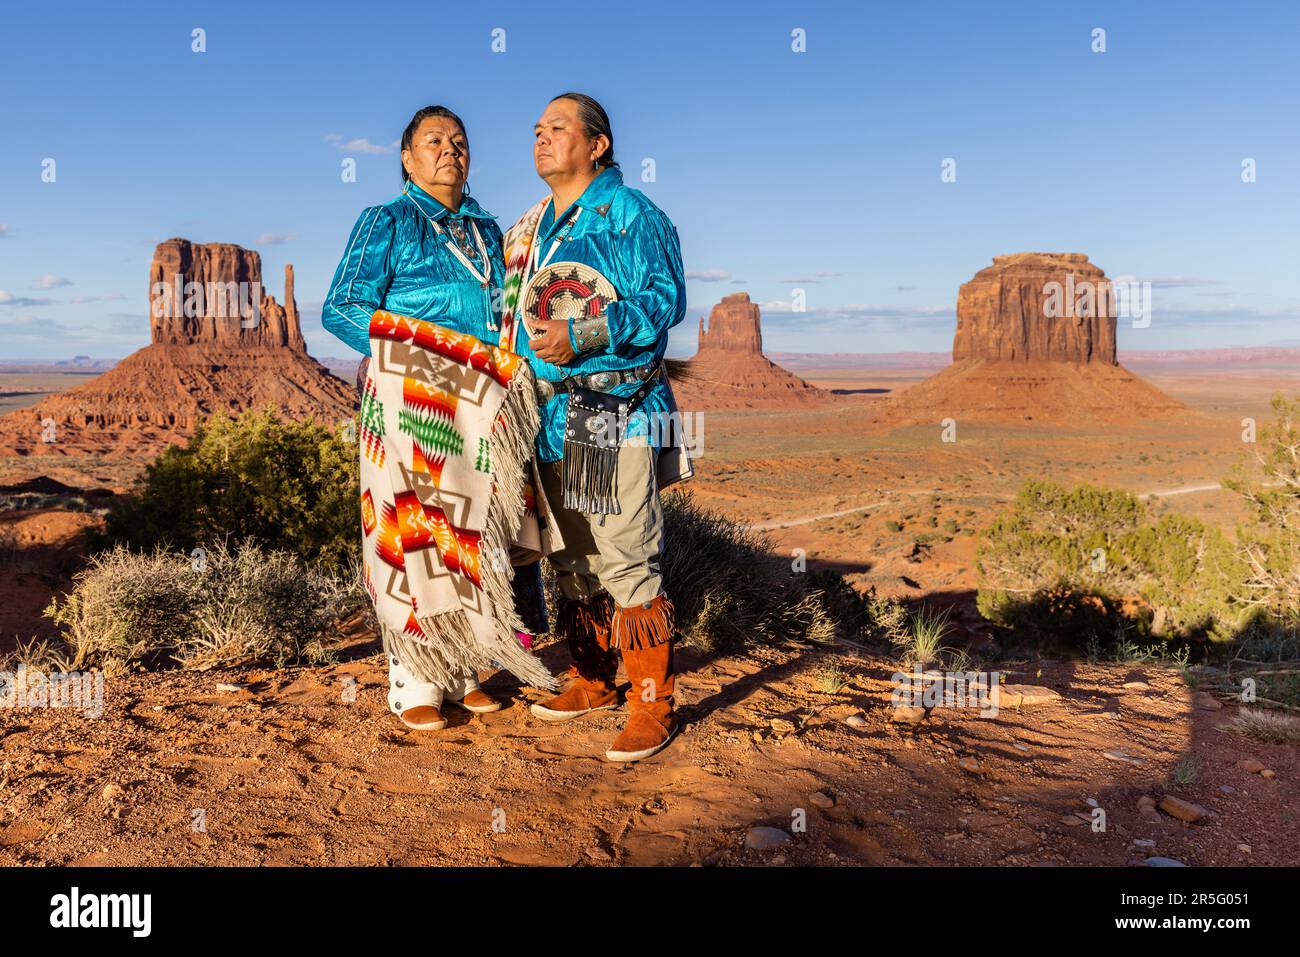 Ein amerikanisches Indianer-Navajo-Paar, das sich während des Sonnenuntergangs im Monument Valley Navajo Tribal Park, Arizona, USA, posiert Stockfoto